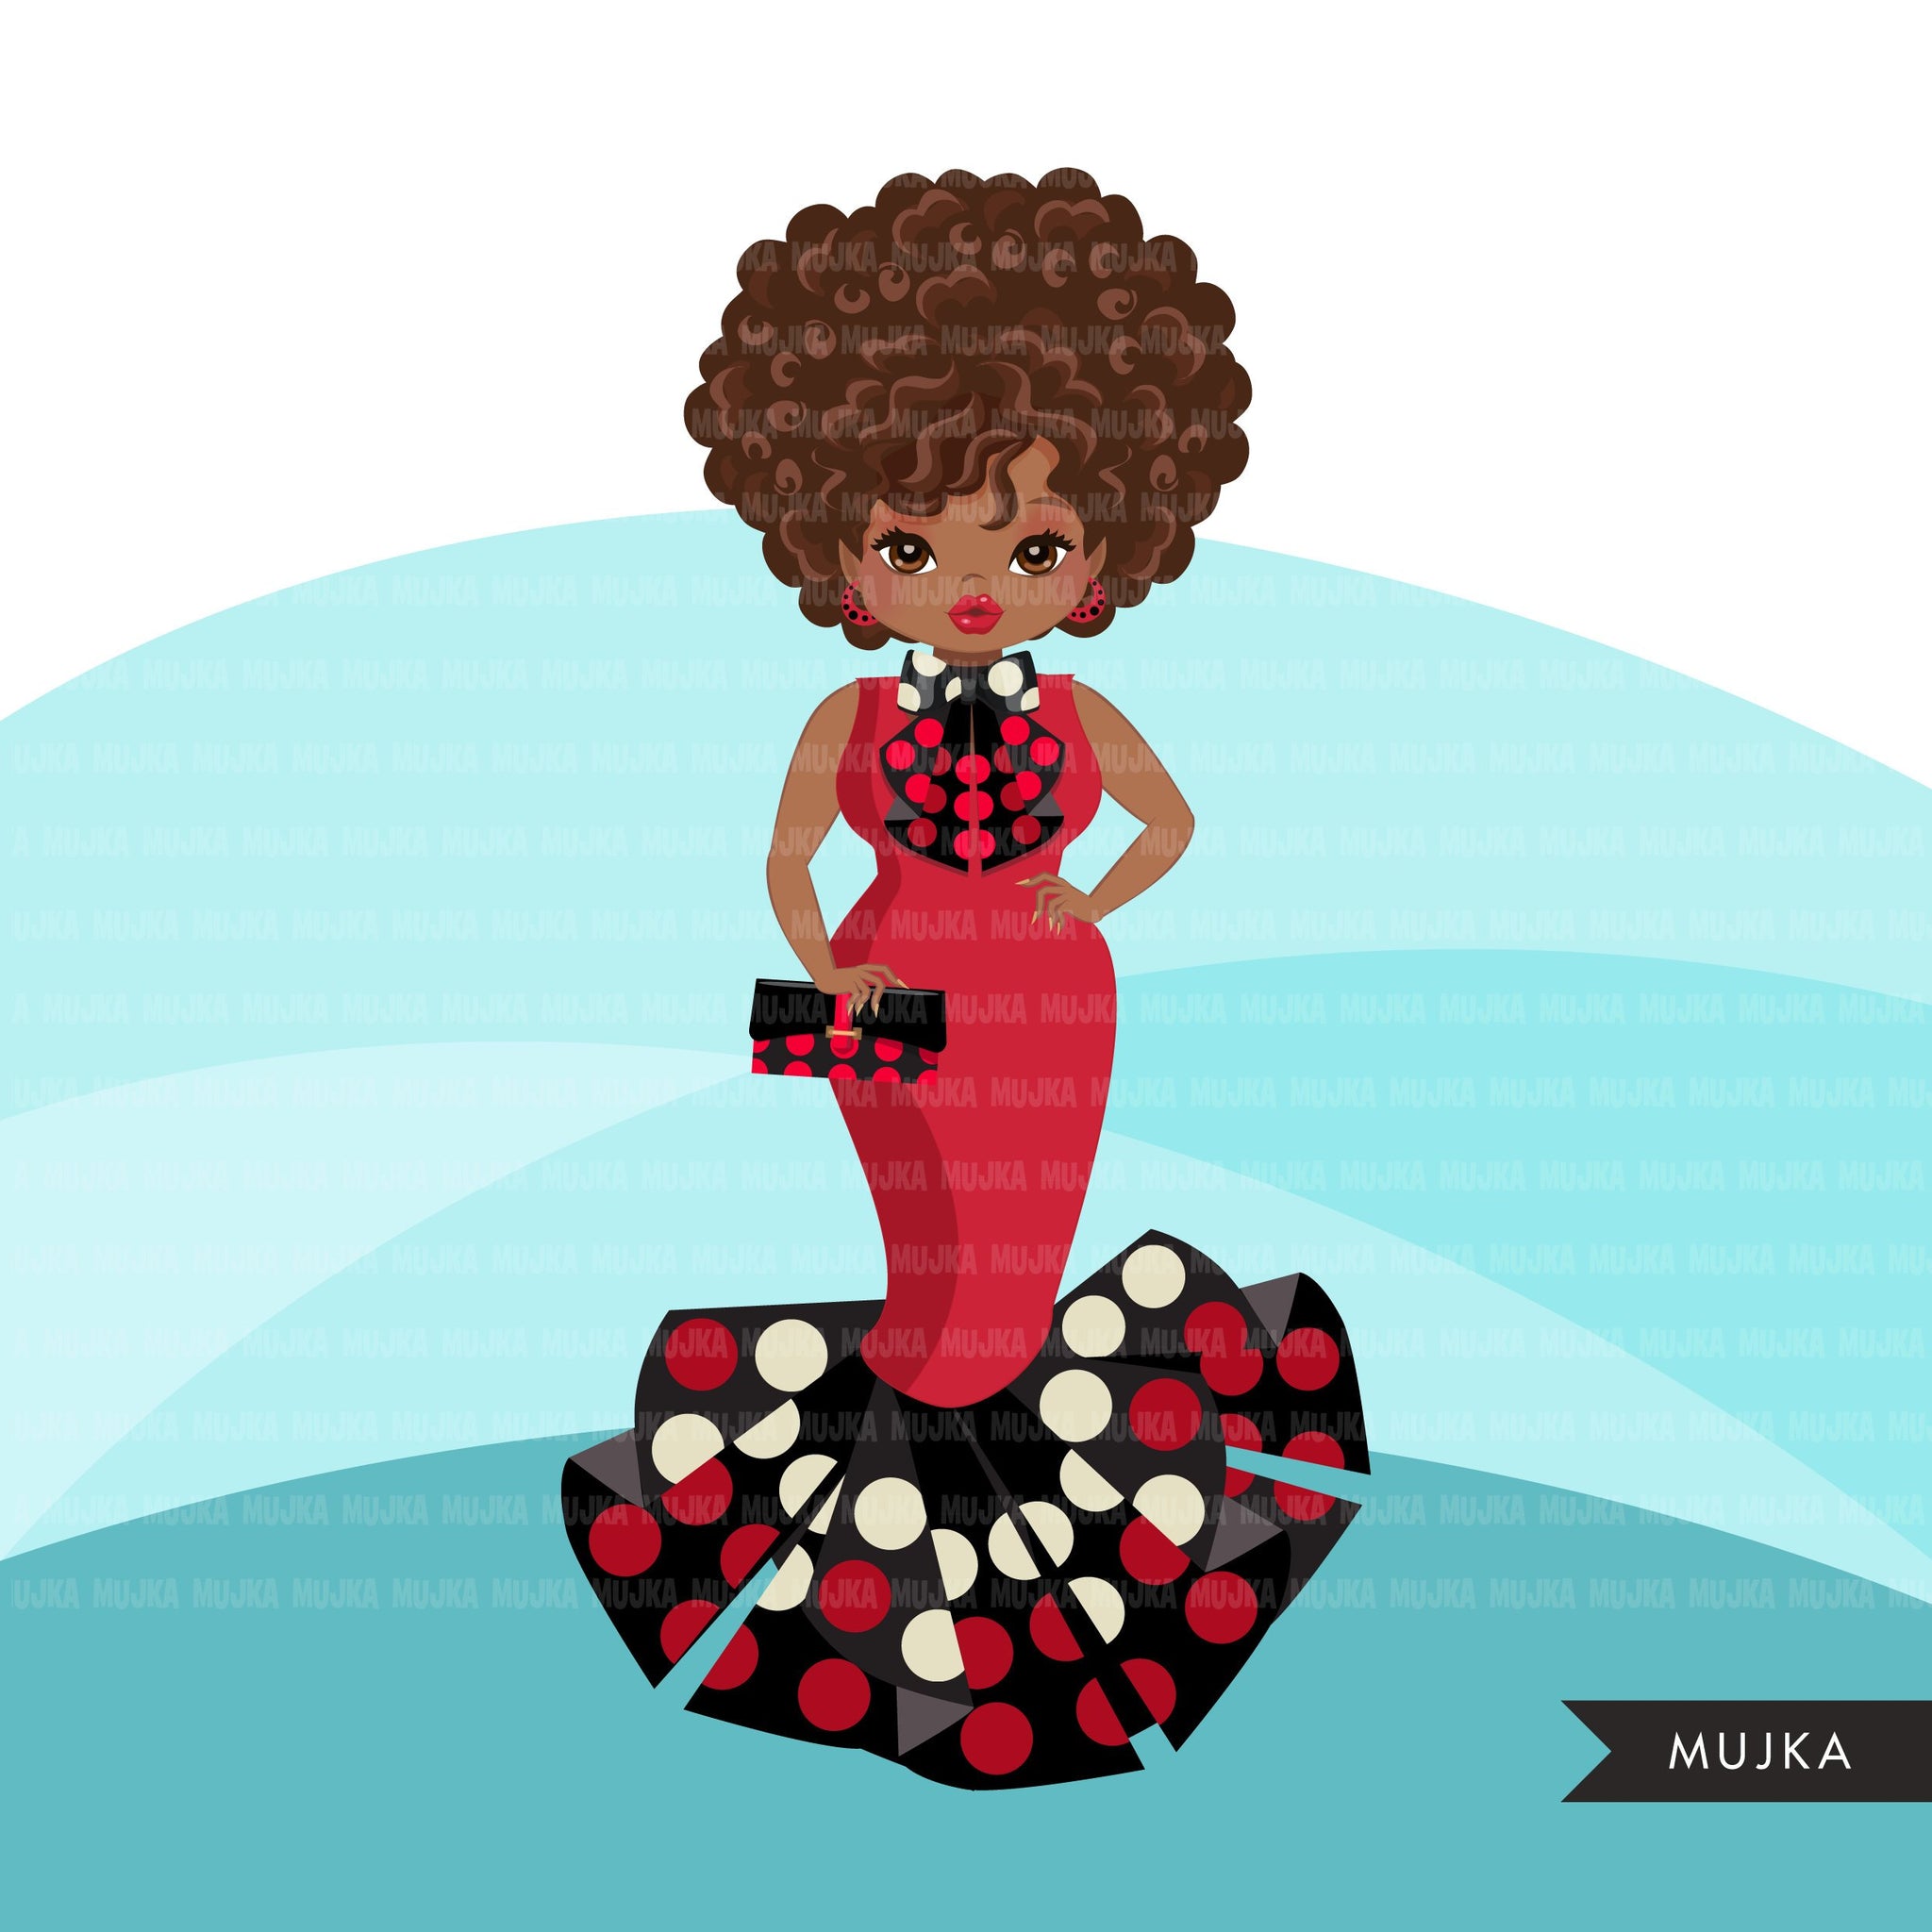 Avatar de clipart de mulher negra, vestido com estampa de bolinhas de Ancara e gravata borboleta, gráficos de moda chefe afro girl clip art impressão e corte png